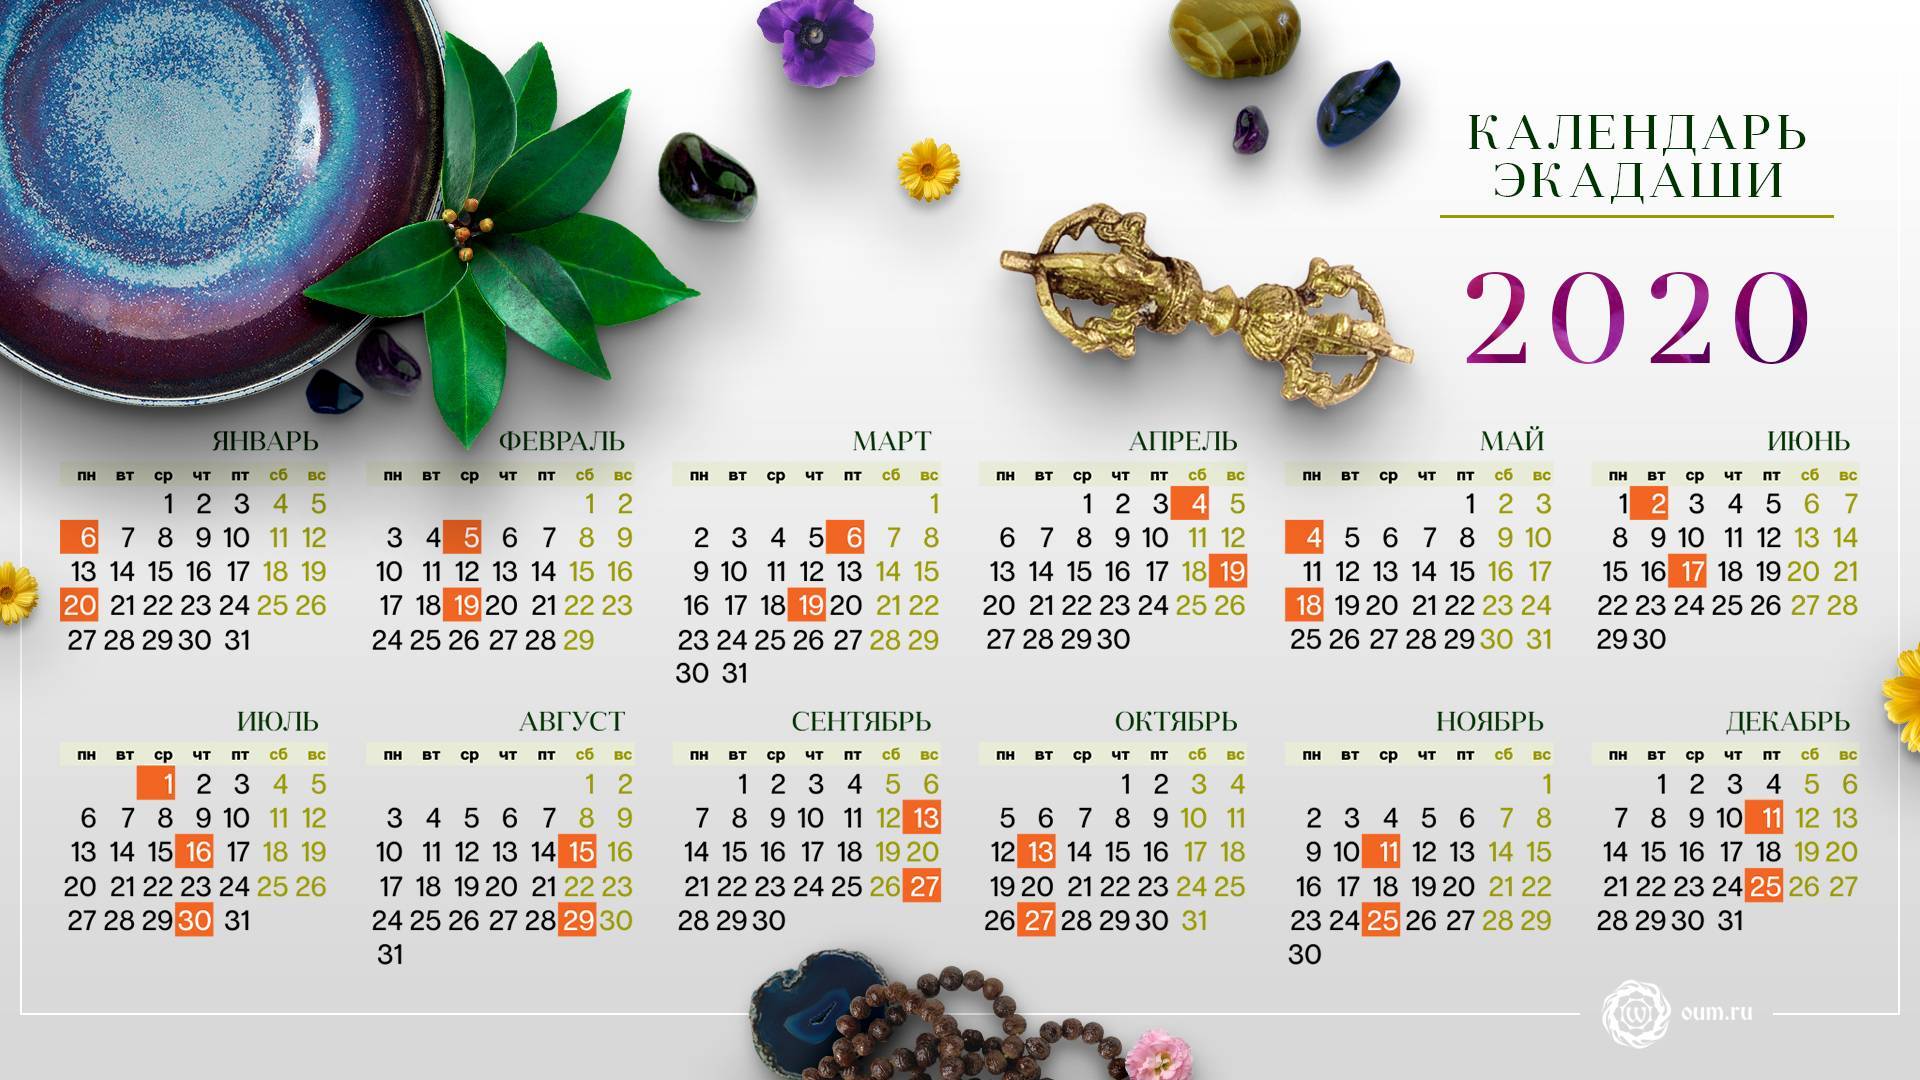 Календарь экадаши | slavyoga
календарь экадаши — slavyoga